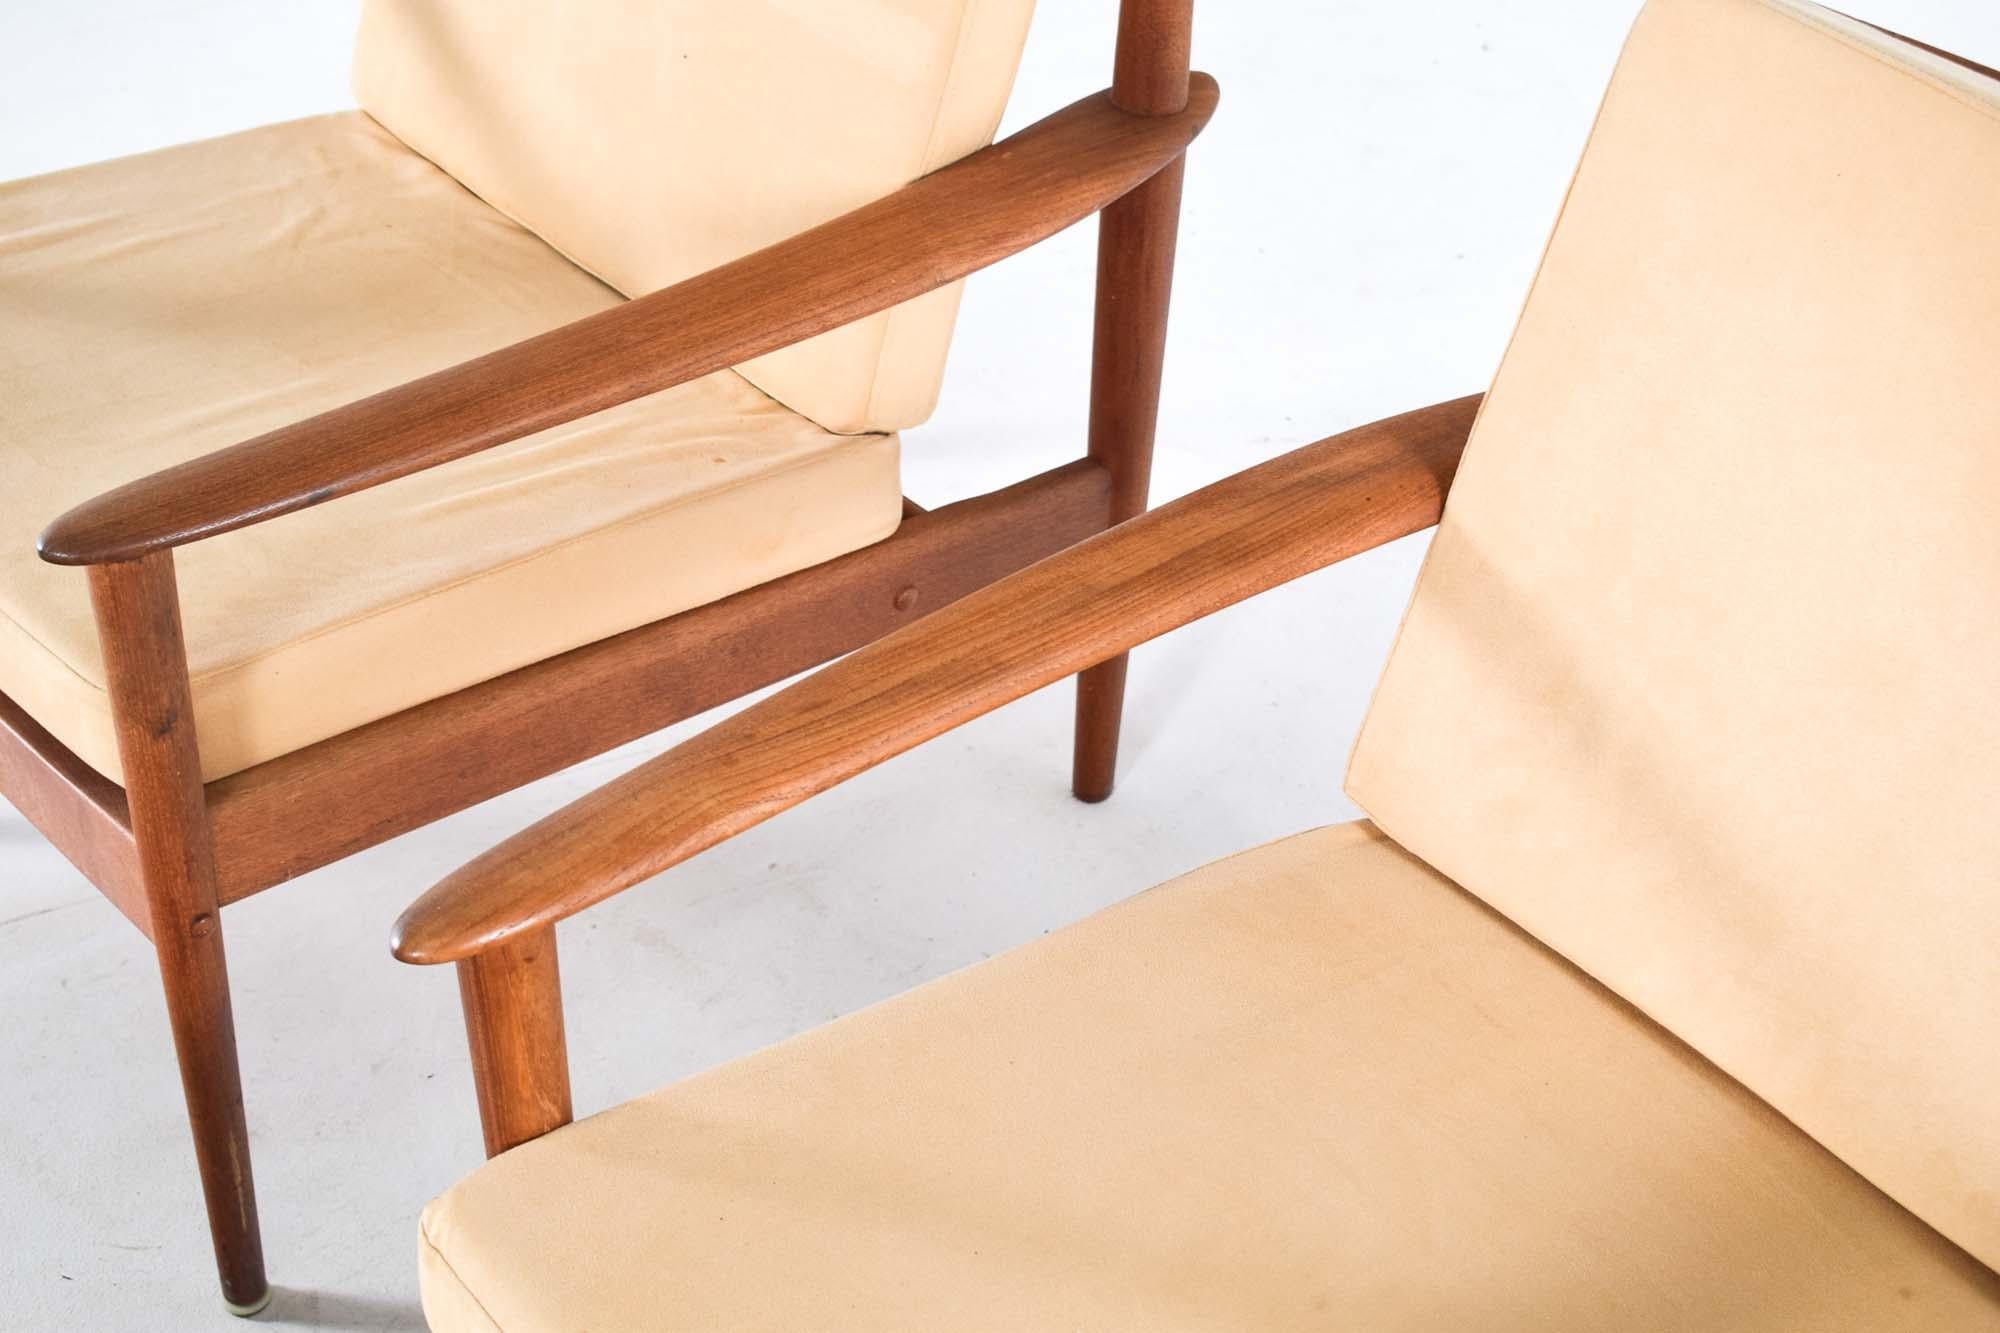 Cette image présente une paire de fauteuils modernes du milieu du siècle accompagnés d'un tabouret assorti, conçus par Grete Jalk. Les chaises et le tabouret sont fabriqués en bois de teck, qui a vieilli pour prendre une teinte chaude et mielleuse,